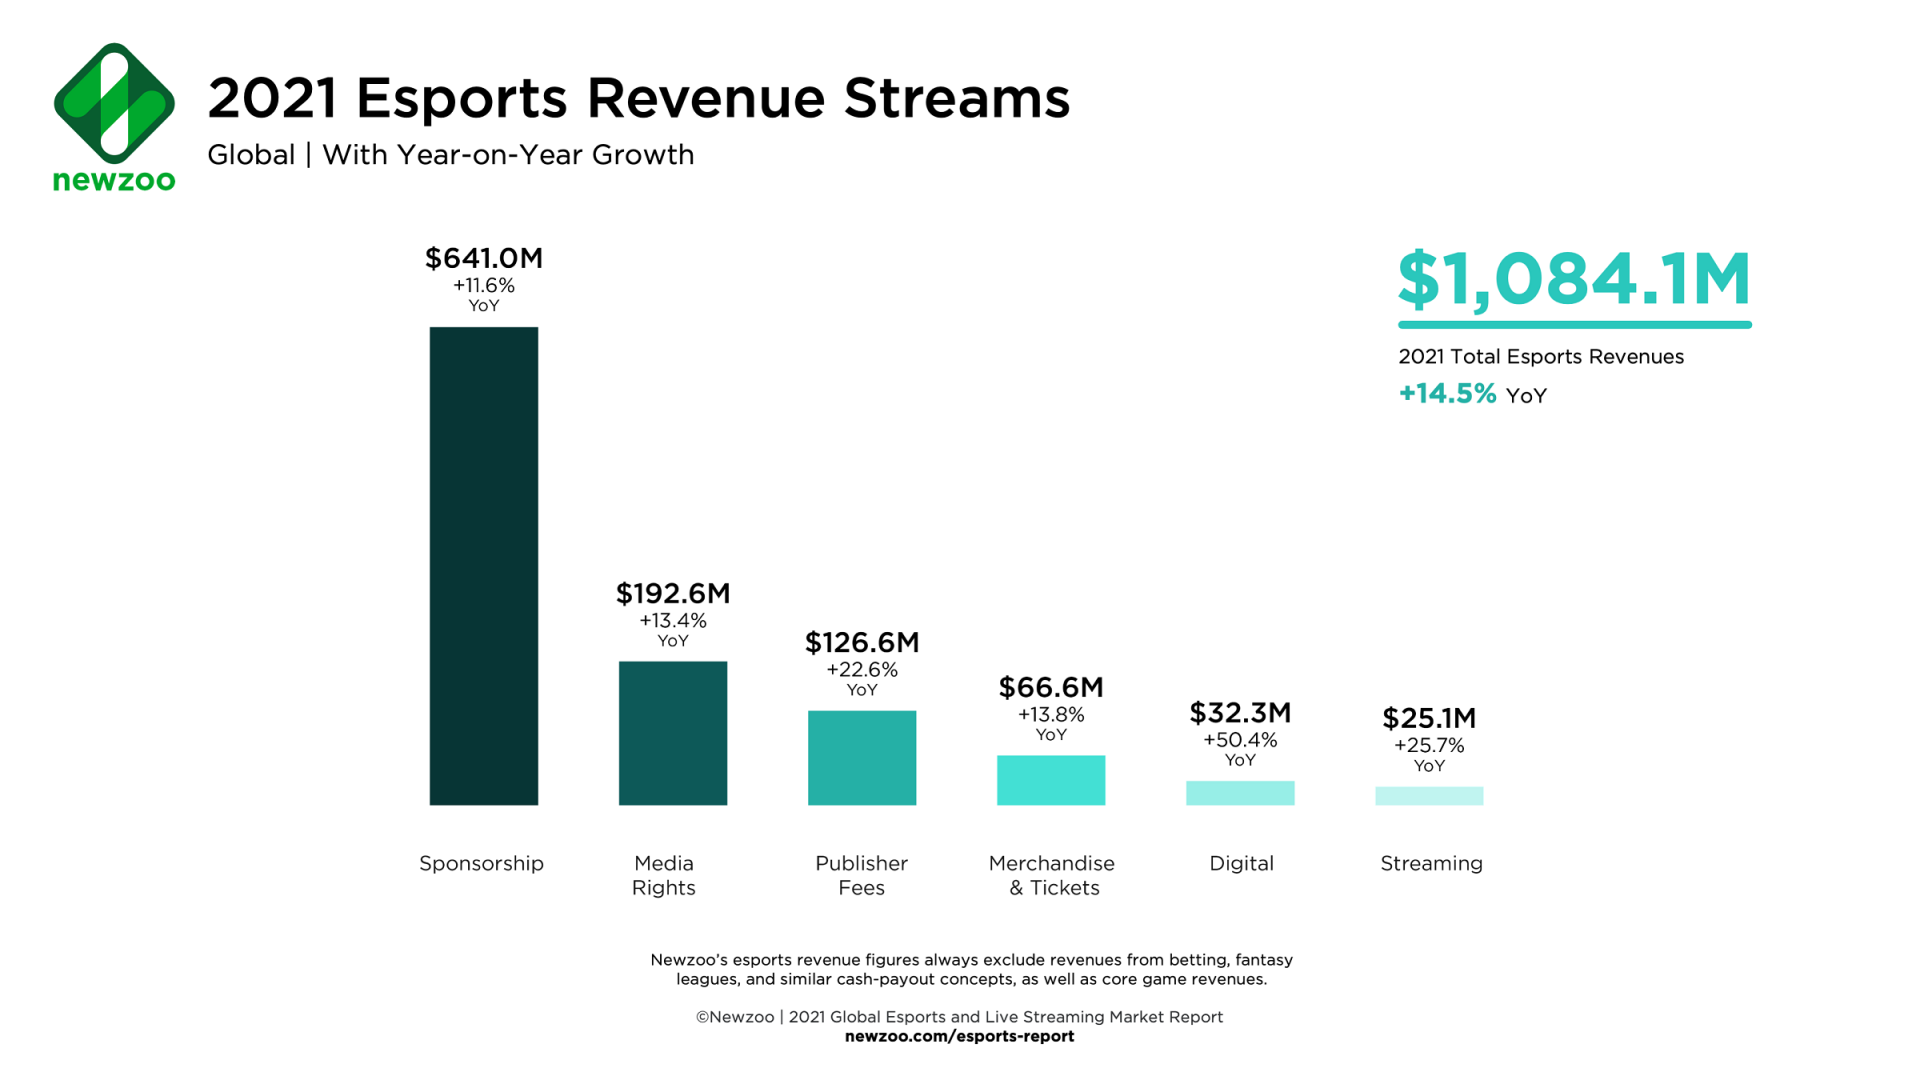 Newzoo 預估 2021 年全球電子競技營收將超過 10.8 億美元 遊戲直播觀眾將來到 7.2 億人